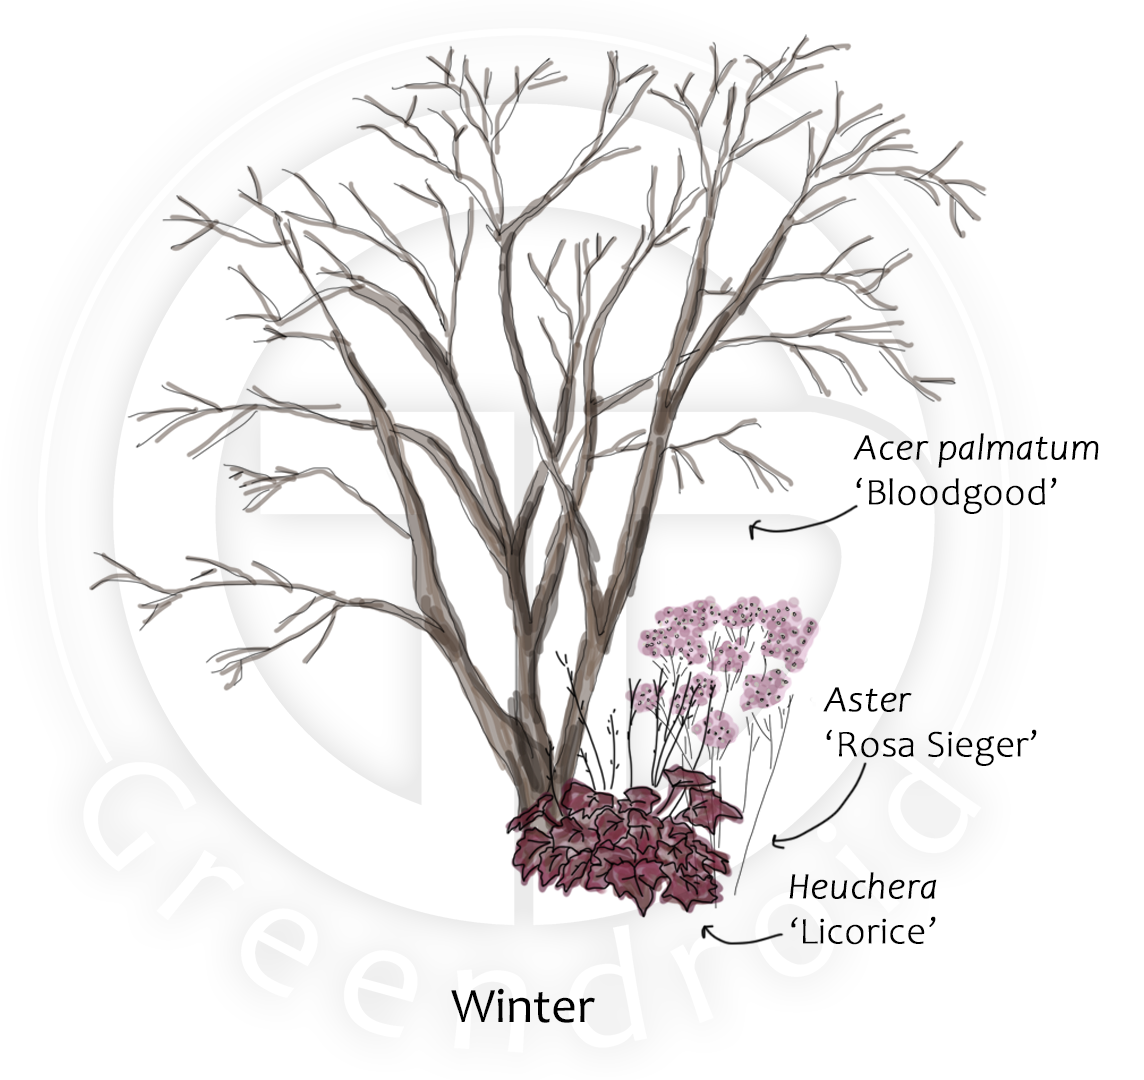 Acer, Lupinus und Heuchera im Winter